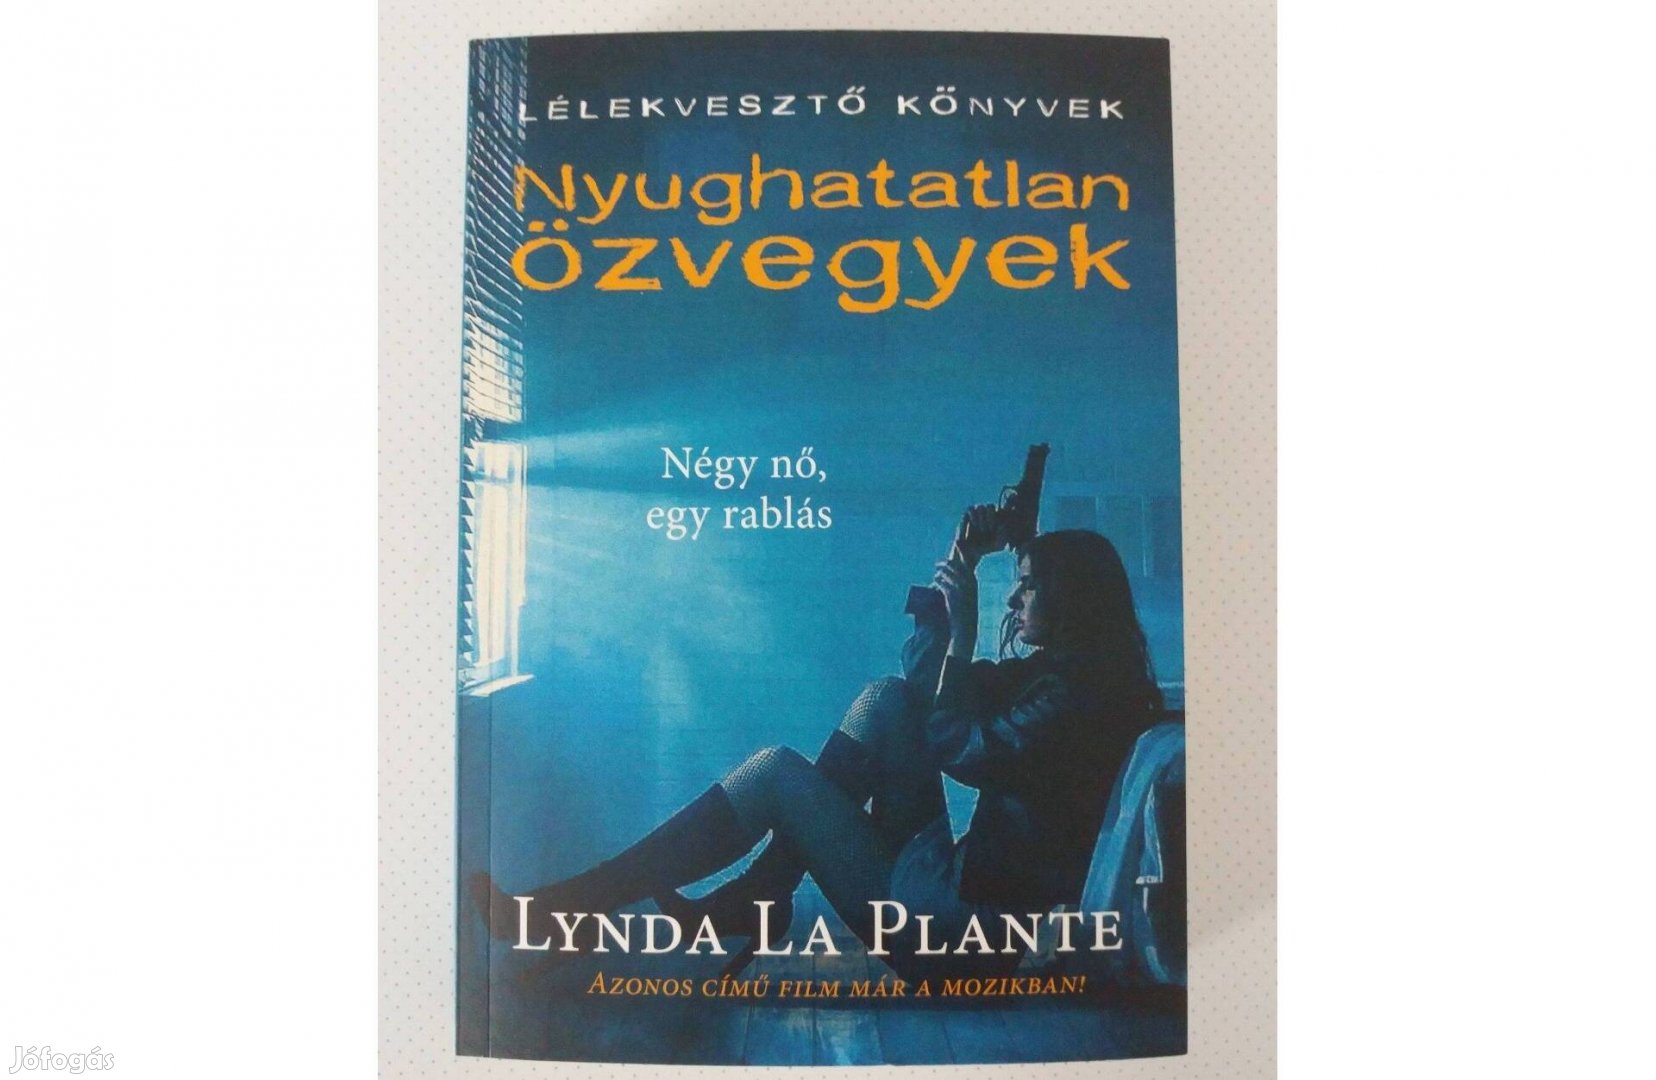 Lynda La Plante: Nyughatatlan özvegyek (Négy nő, egy rablás)